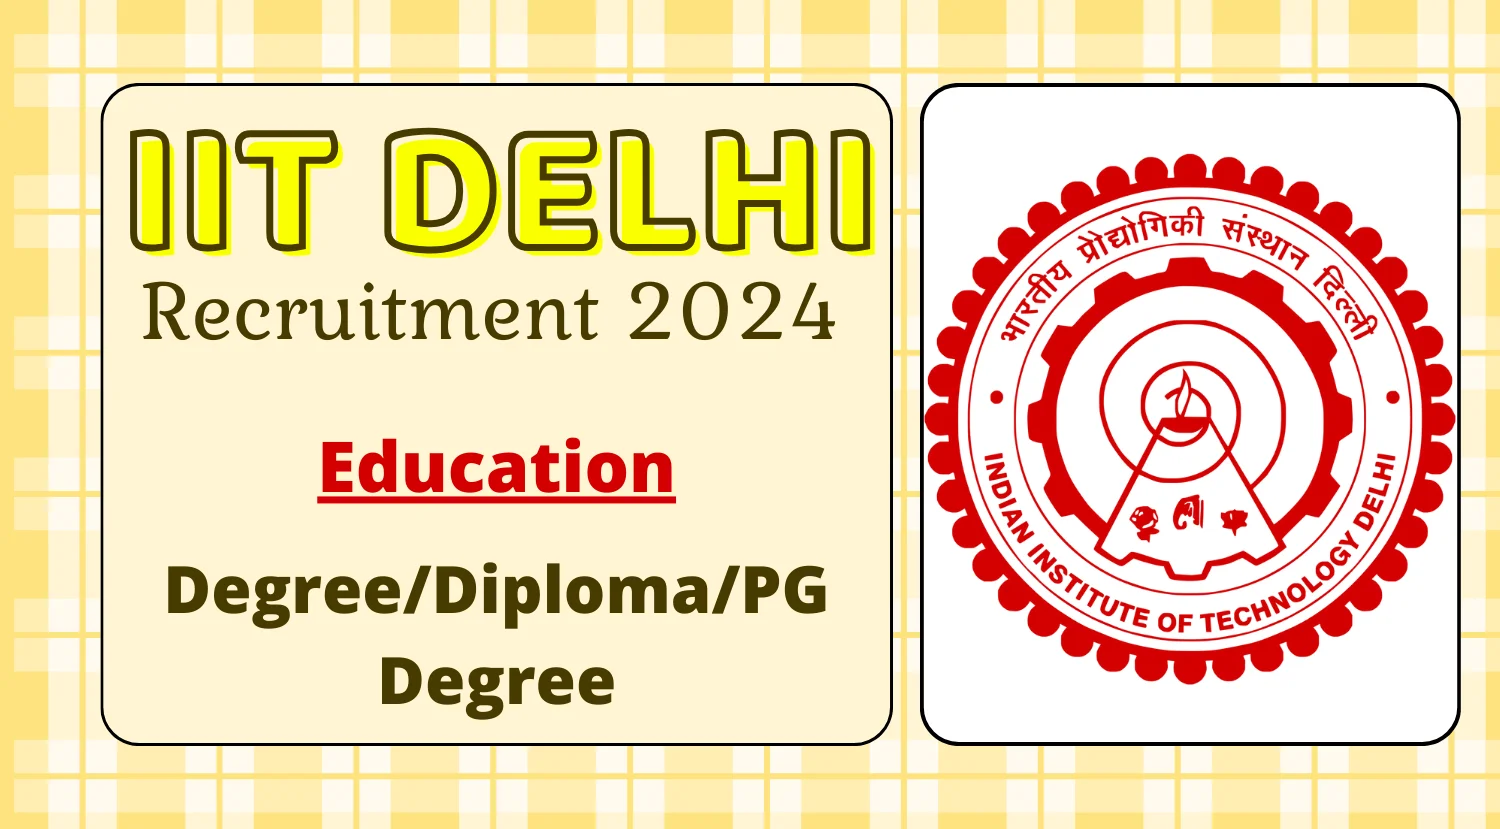 IIT Delhi Assistant Recruitment 2024